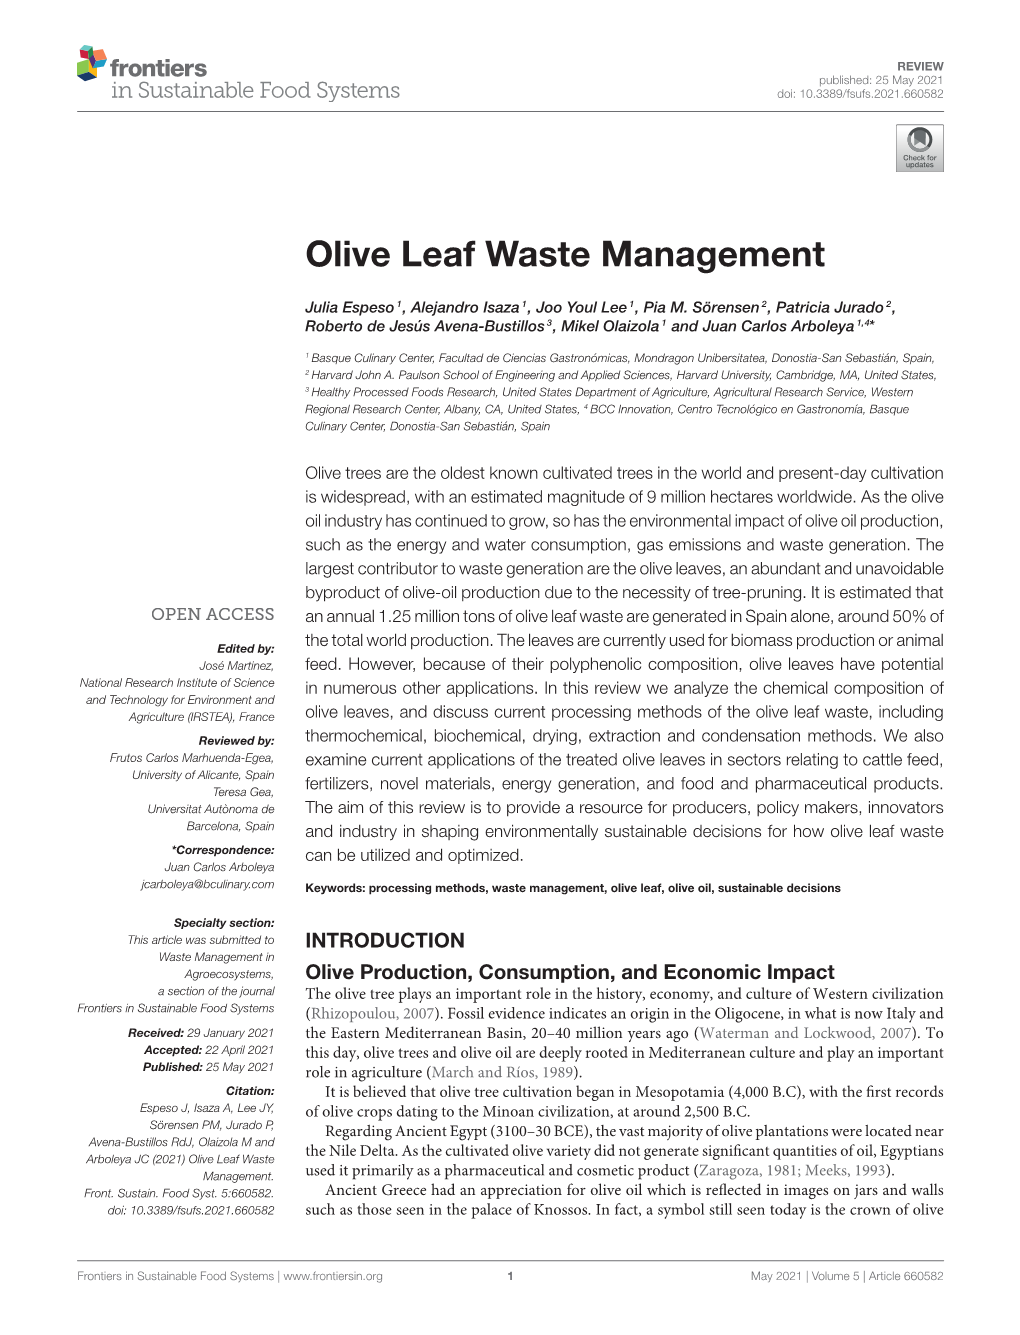 Olive Leaf Waste Management